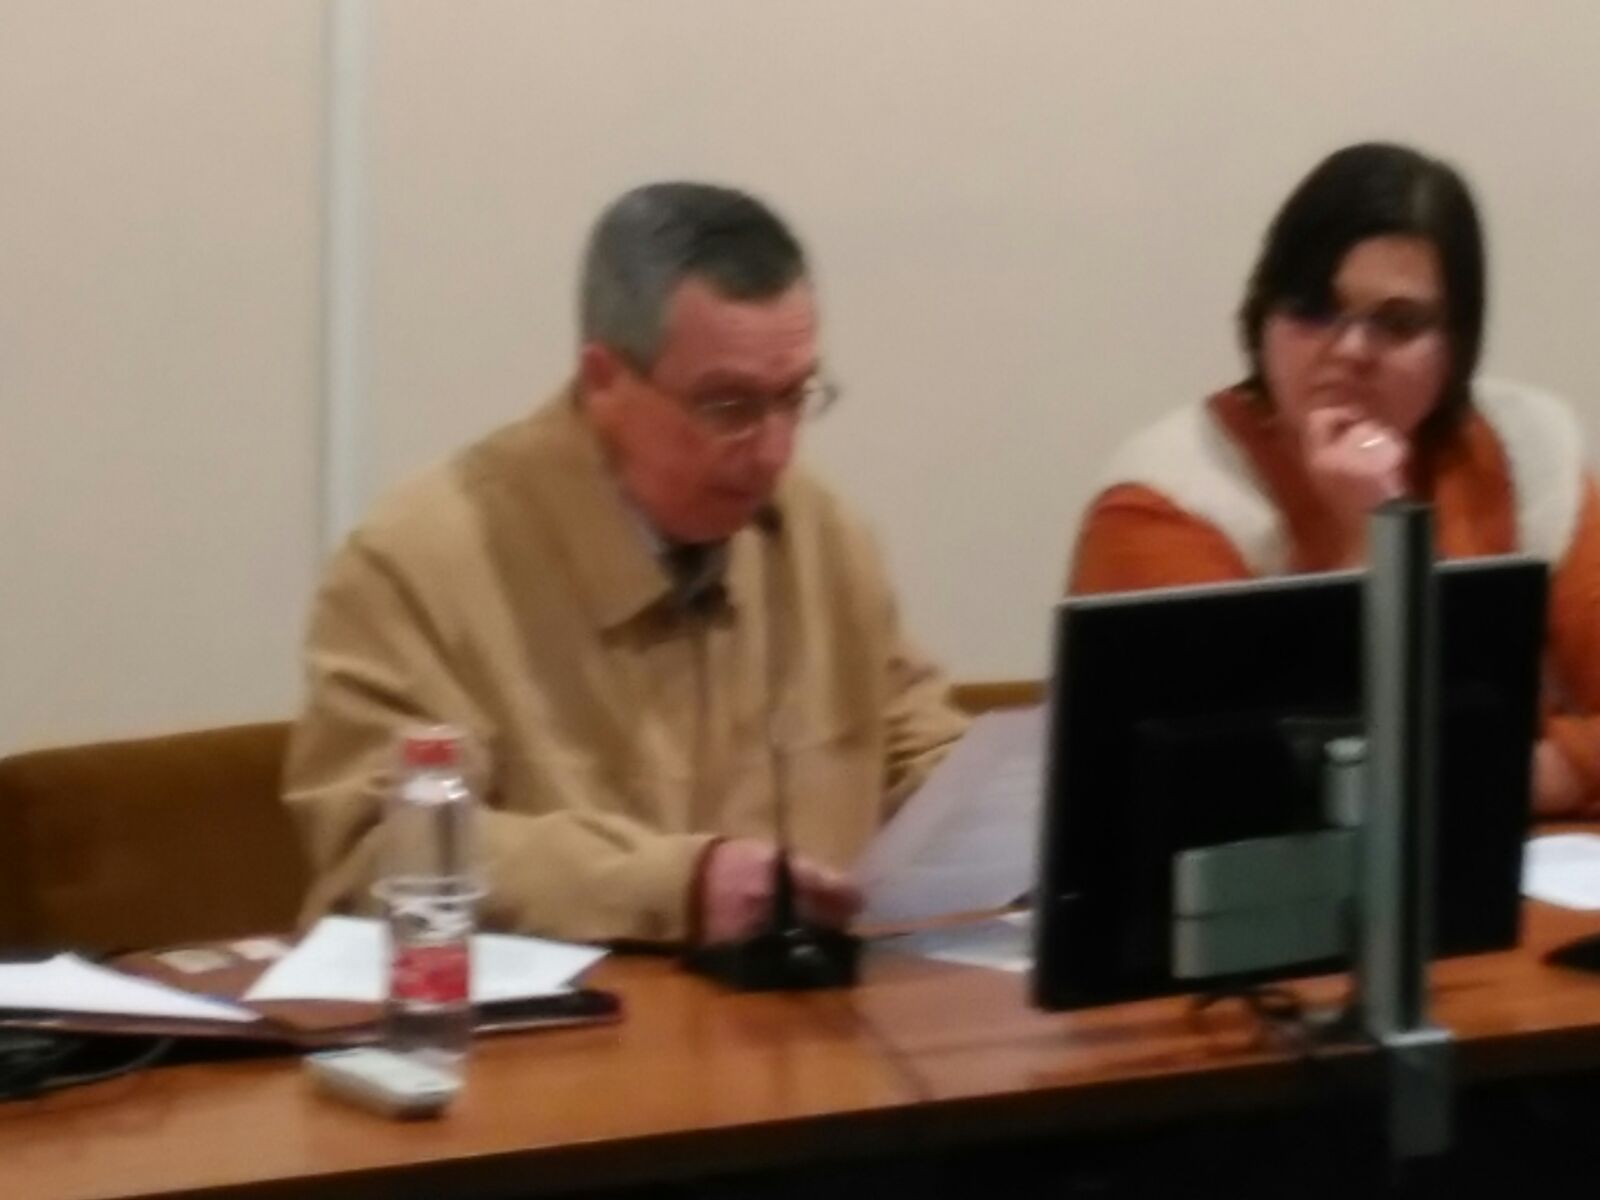 Imagen de los ponentes José María Hernández y Mireia Vidal i Quintero sentados durante el desarrollo de la conferencia